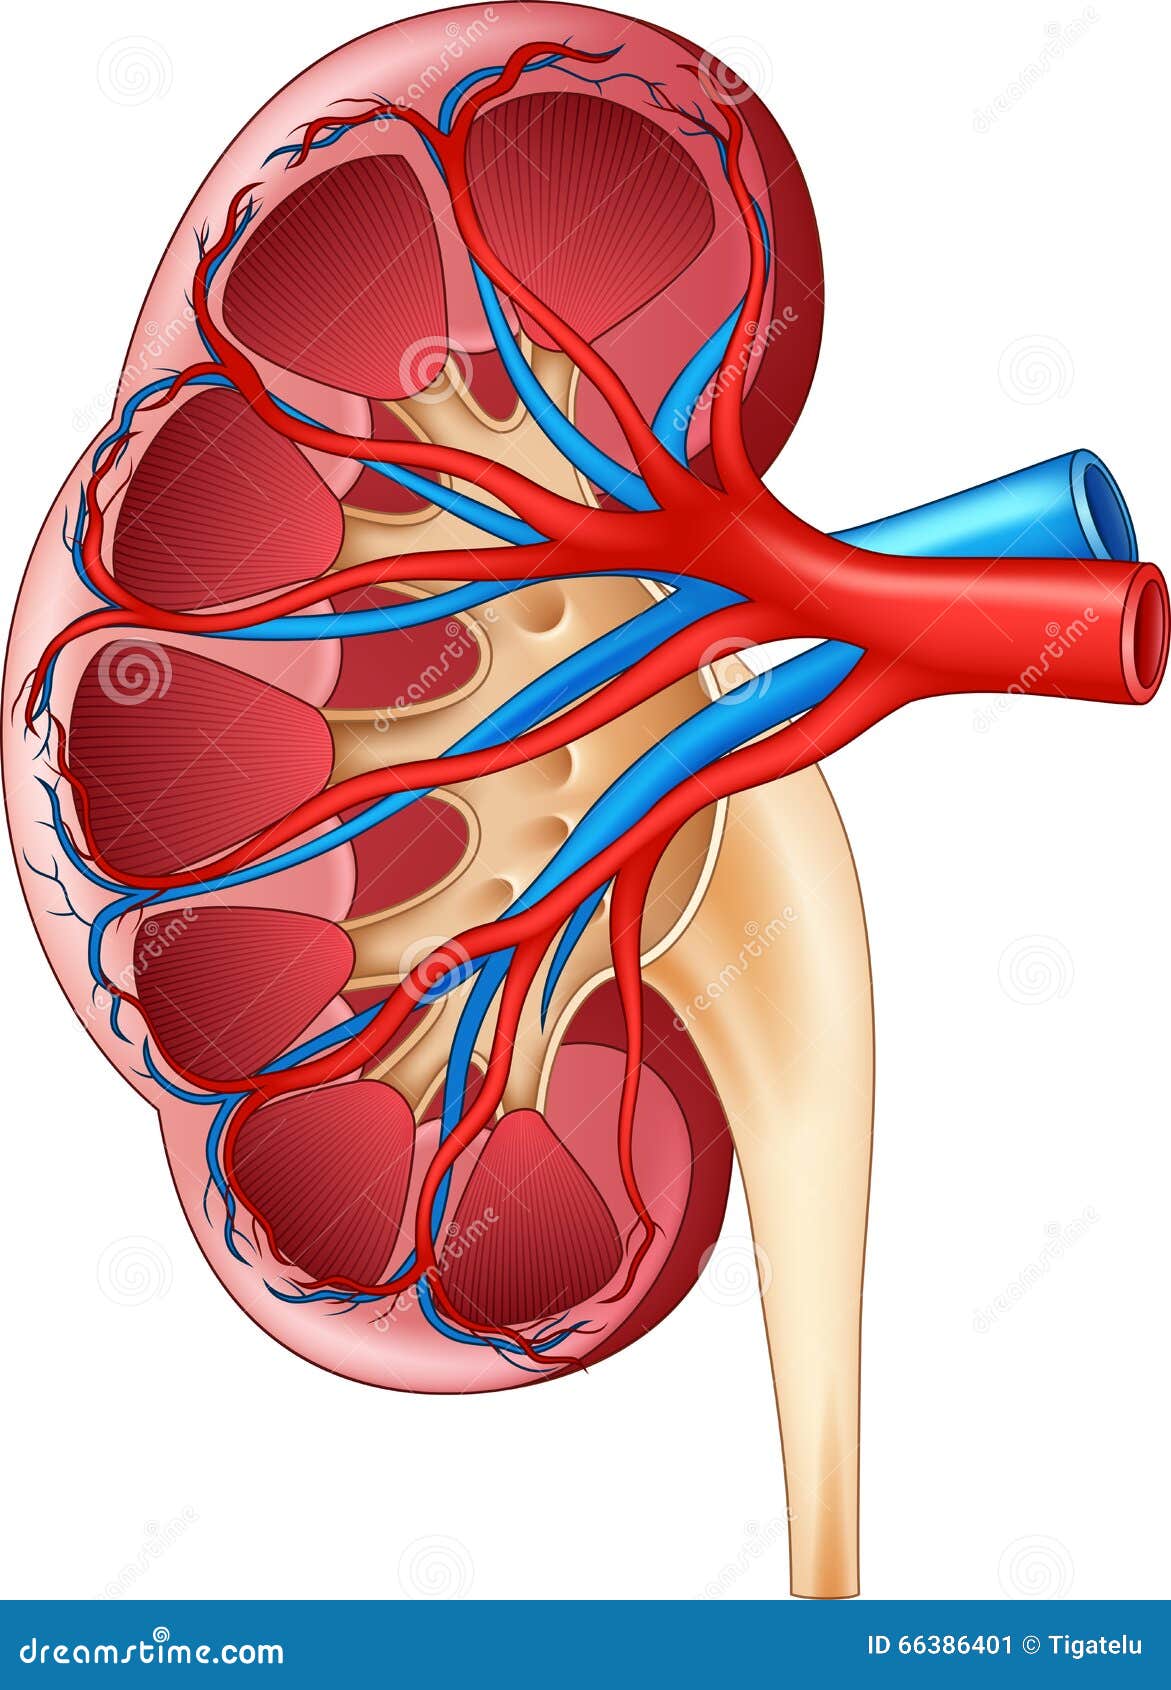 Cartoon Illustration Of Human Internal Kidney Anatomy Stock Vector